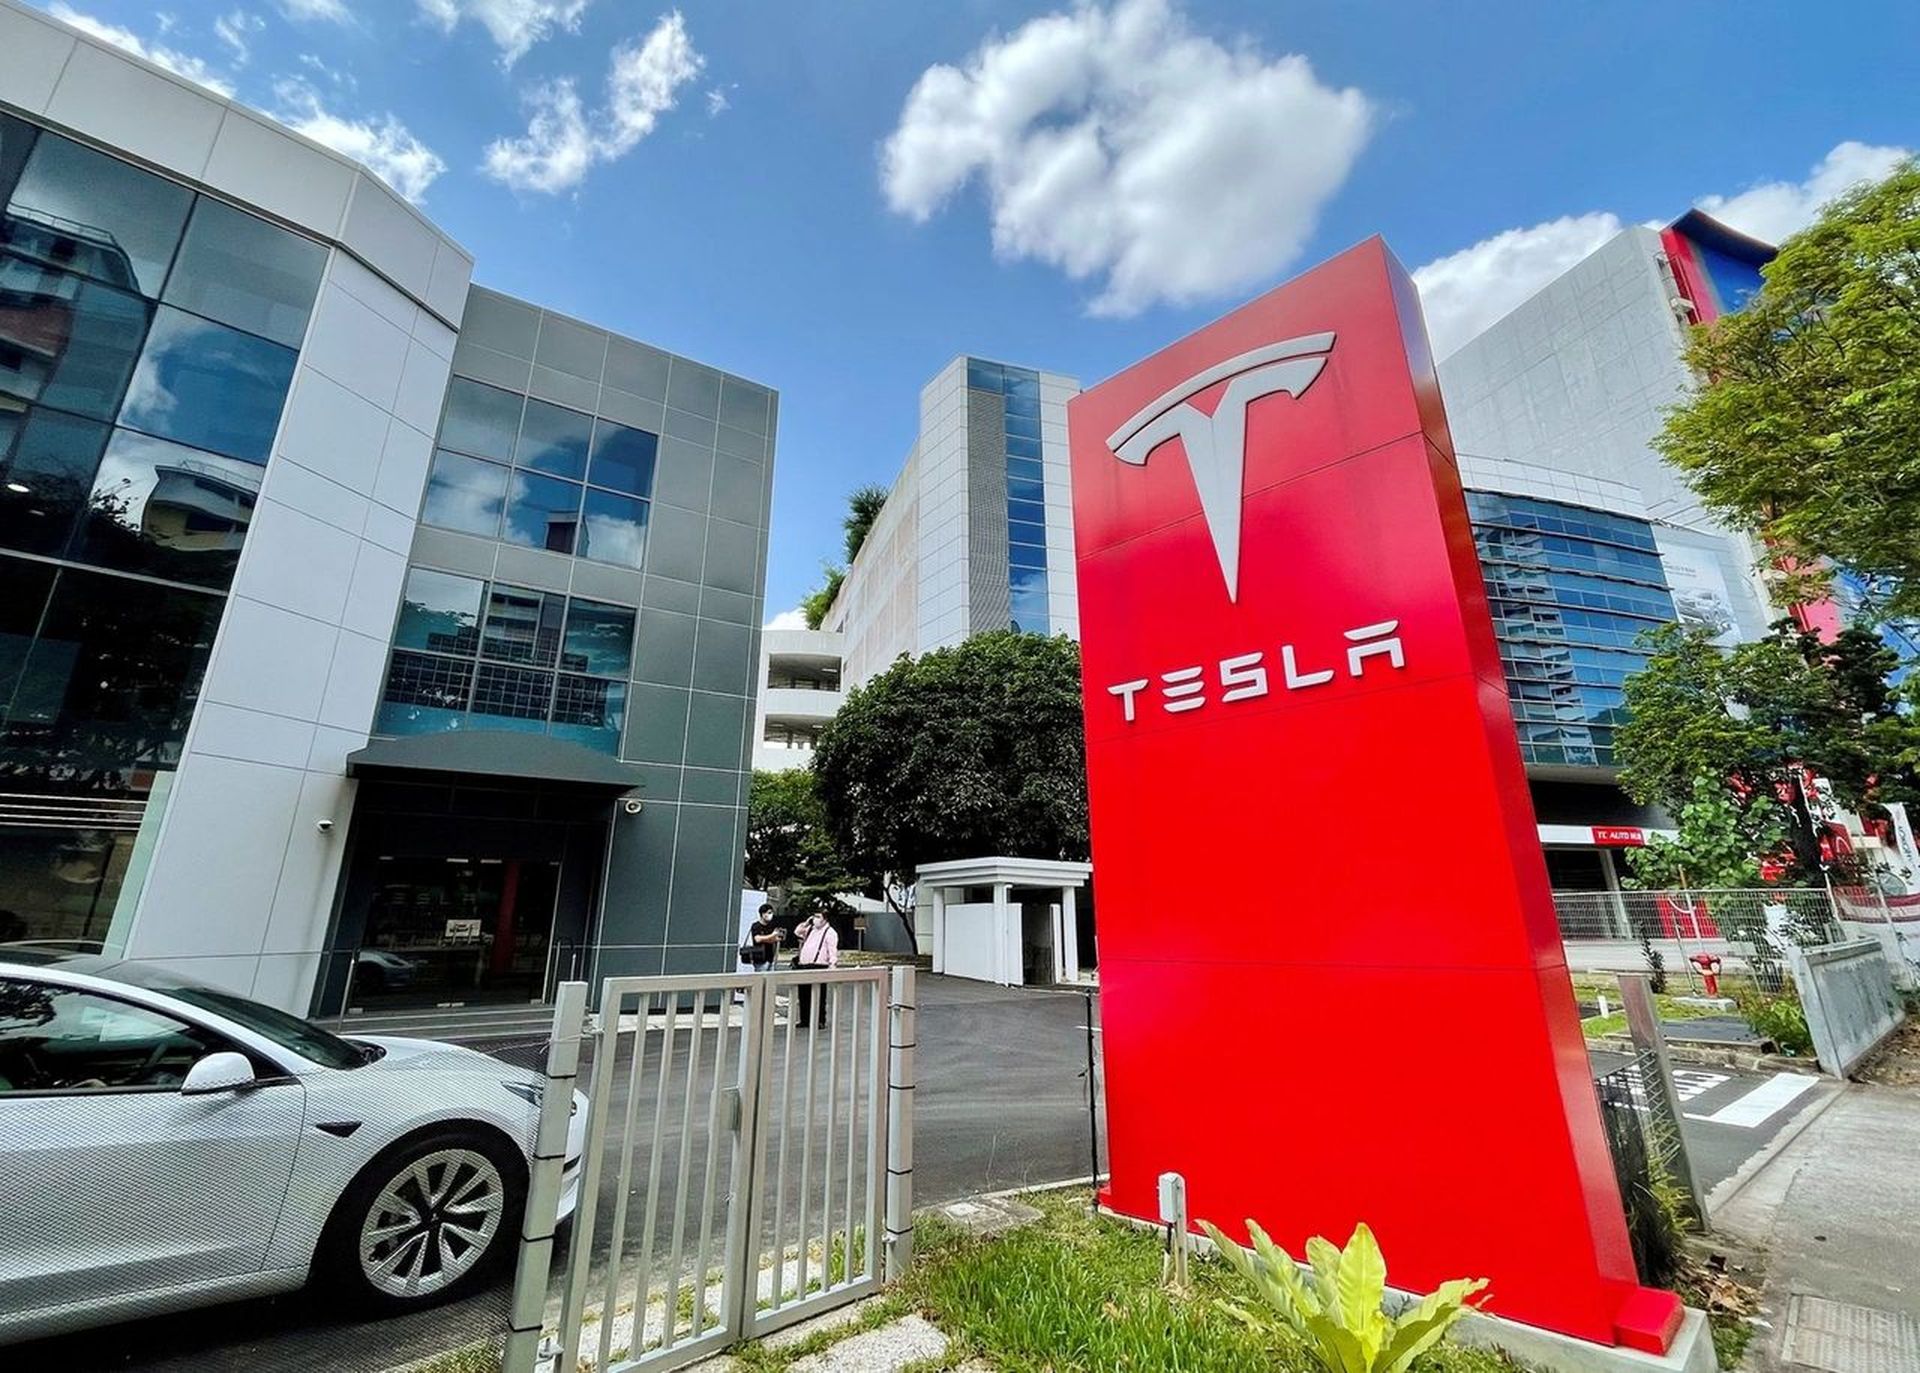 Aujourd'hui, nous couvrons comment regarder l'assemblée des actionnaires de Tesla 2022, afin que vous puissiez savoir quelles décisions seront prises qui auront un impact sur l'avenir de l'entreprise.